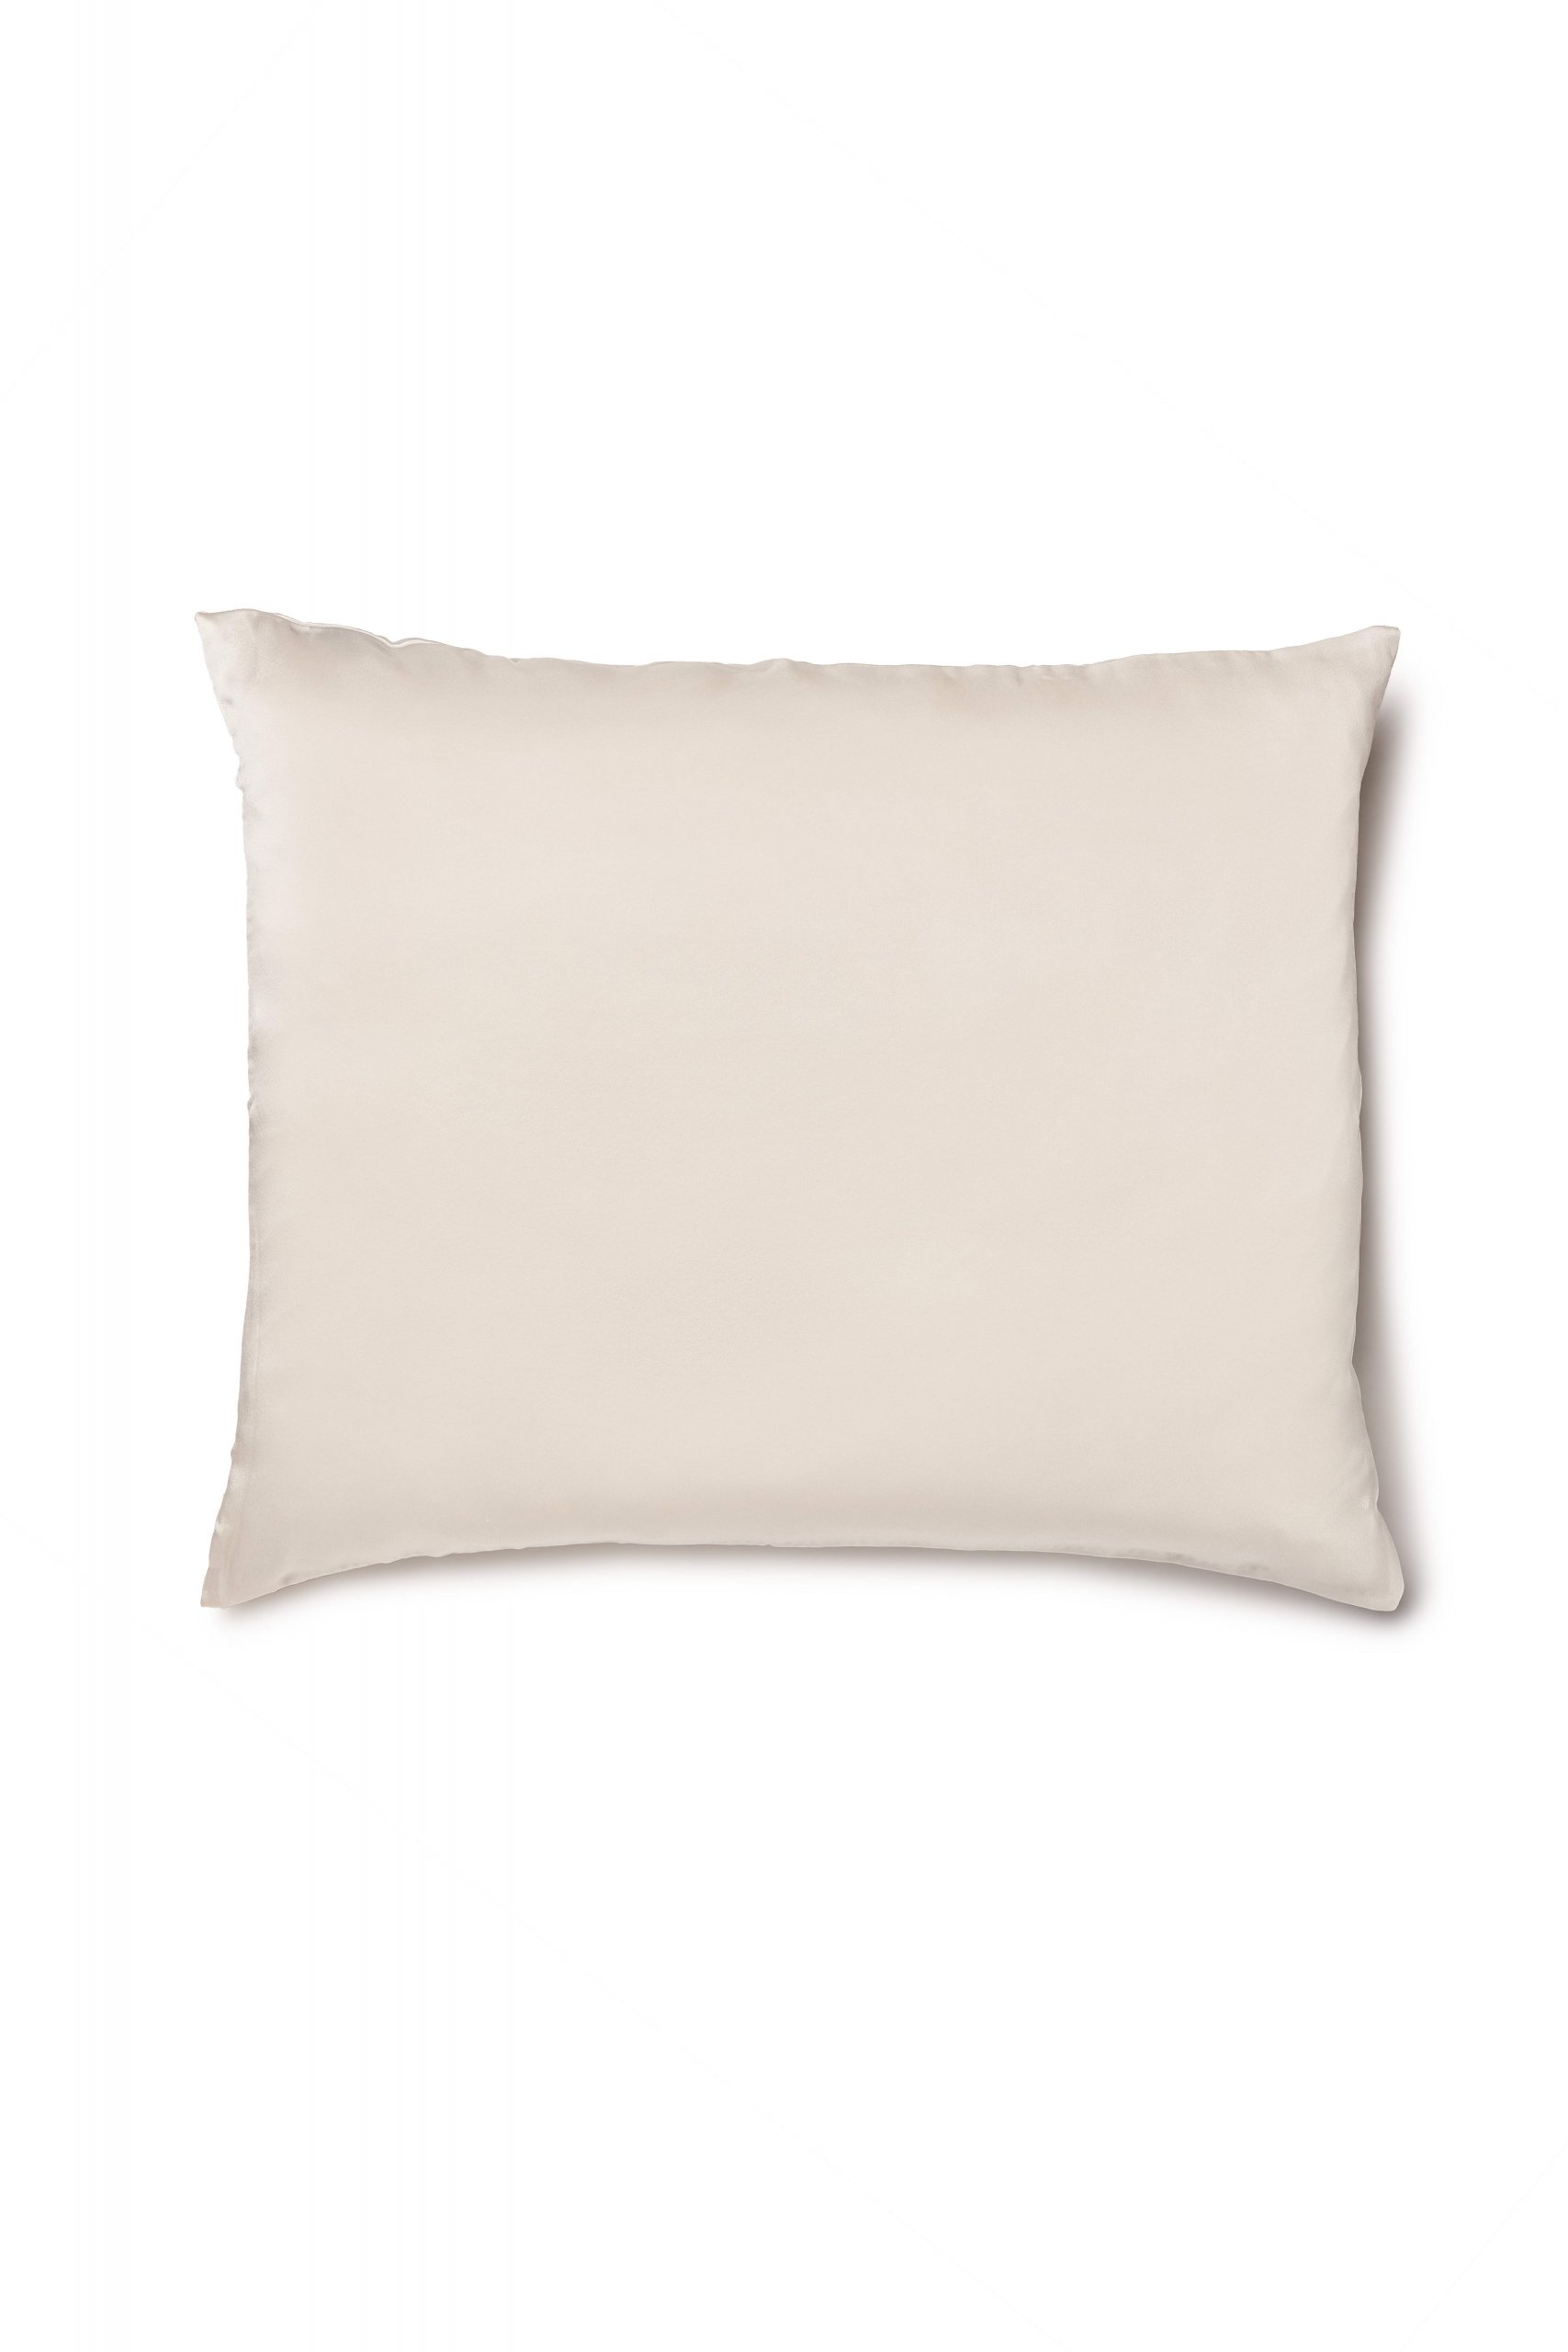 Silk Pillowcase in silver 50 x 60 cm